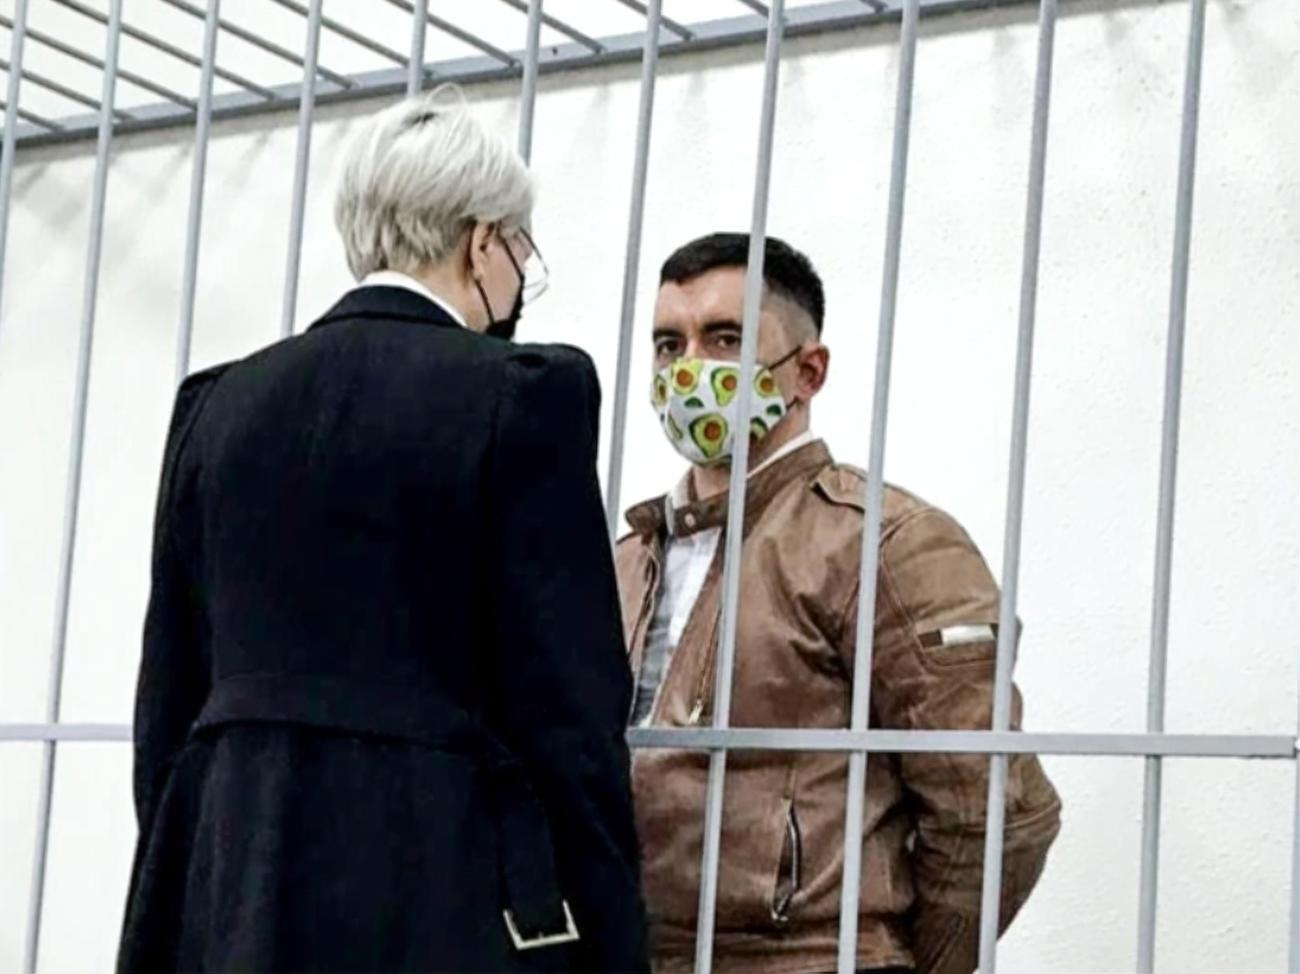 Белорусского политзаключенного Латыпова, который пытался покончить с собой в зале суда, приговорили к 8,5 годам колонии